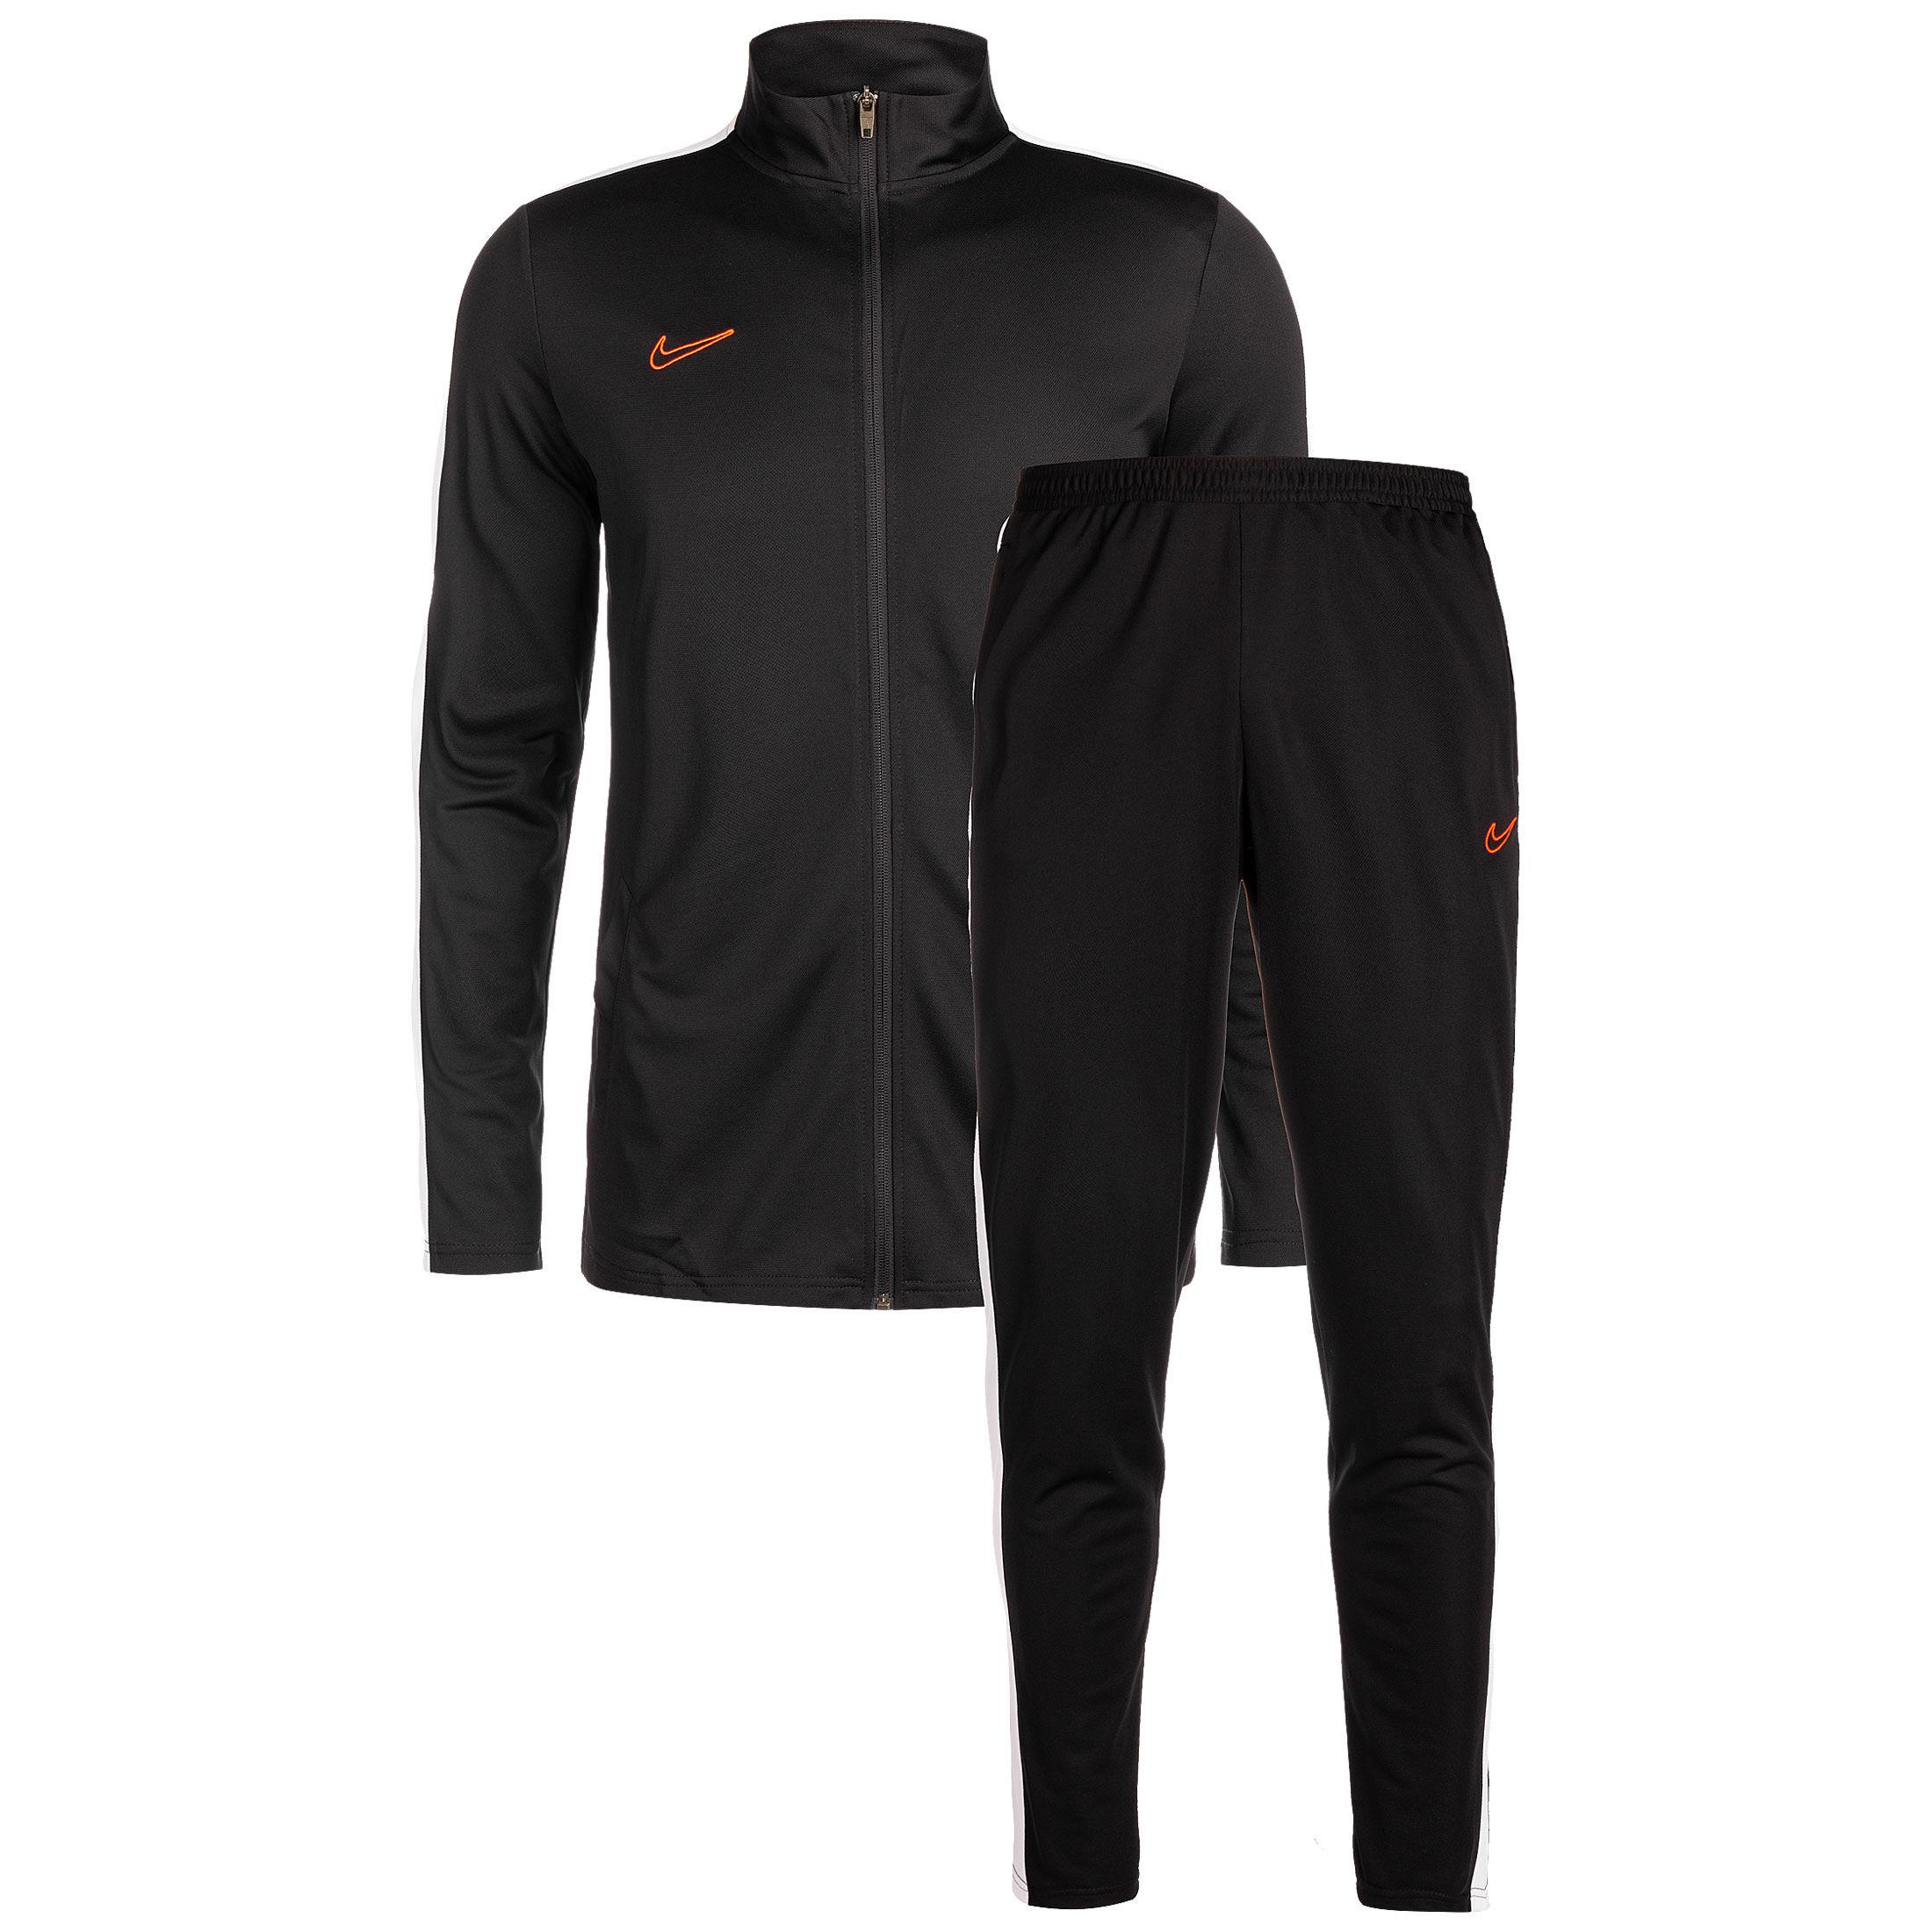 Trainingsanzüge » Nike Performance von Online SportScheck Nike Shop kaufen von im